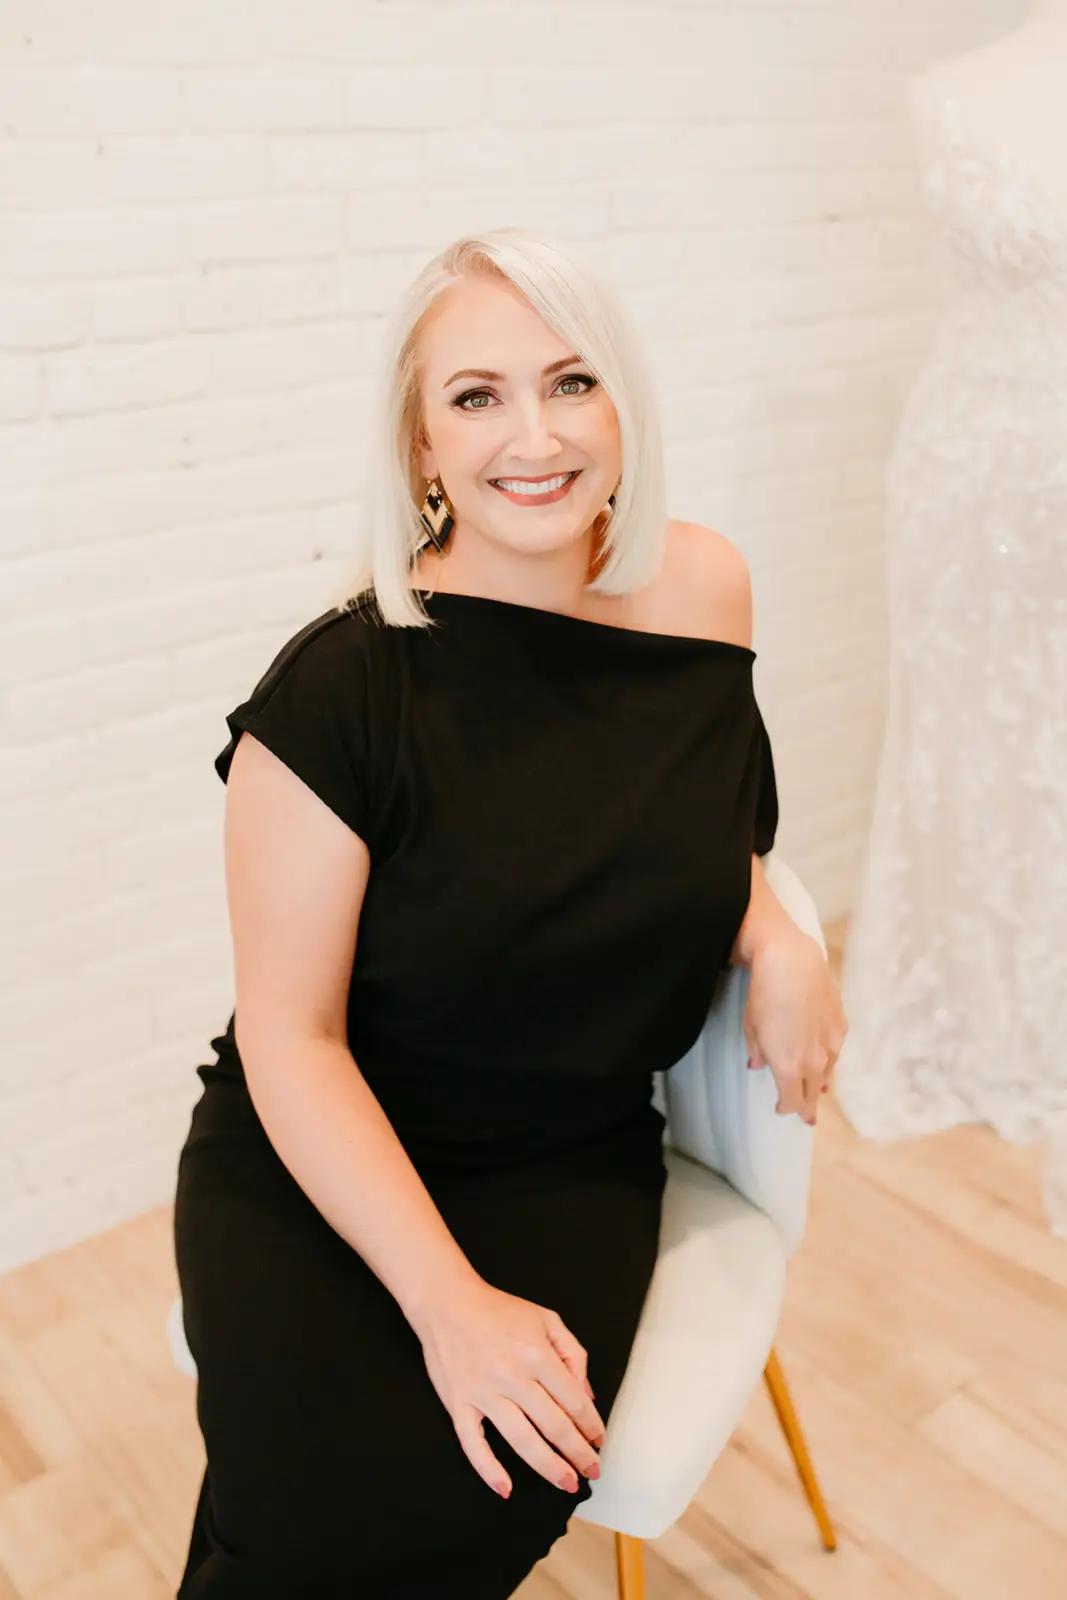 Charlotte's Weddings CEO Krysta